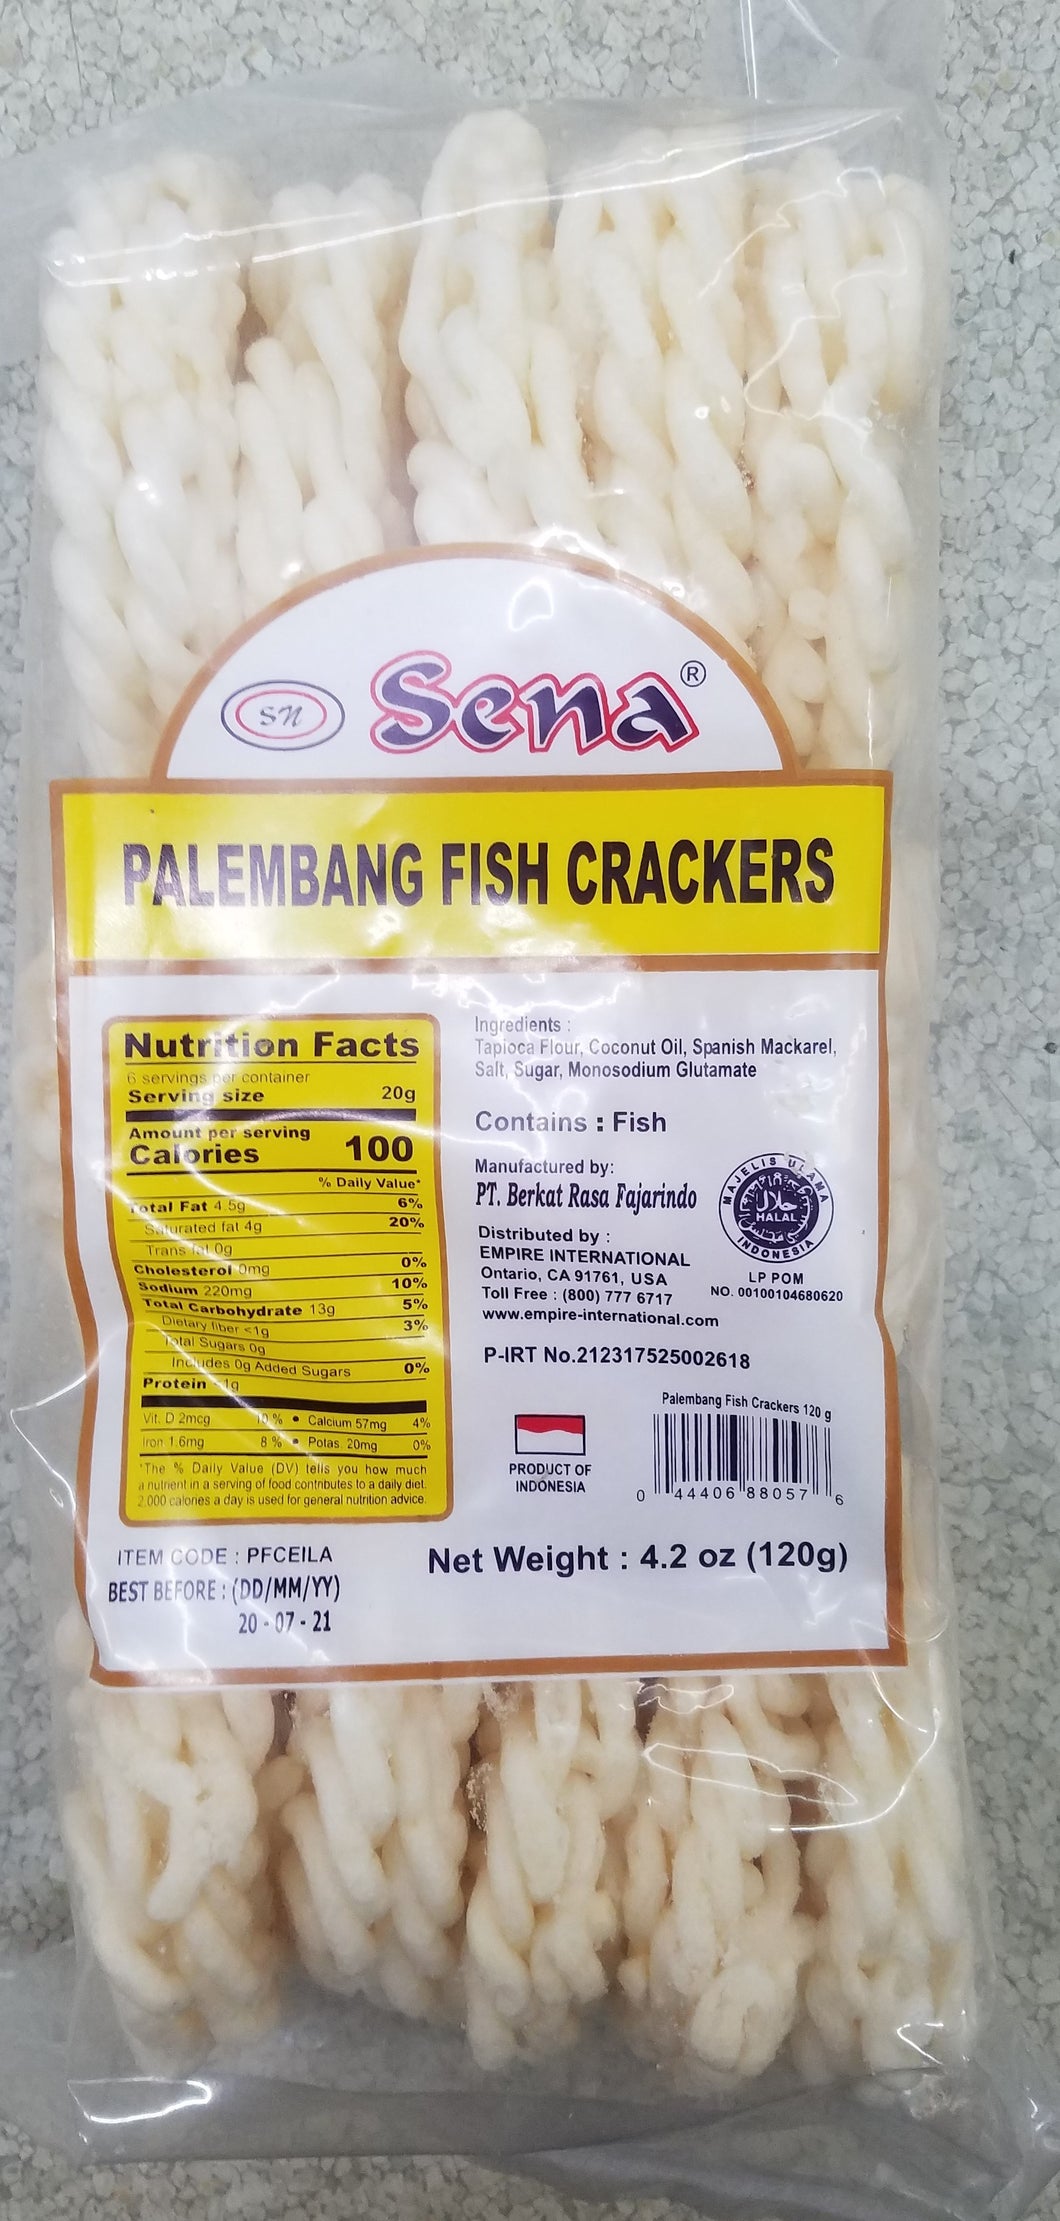 Sena Palembang Fish Crackers